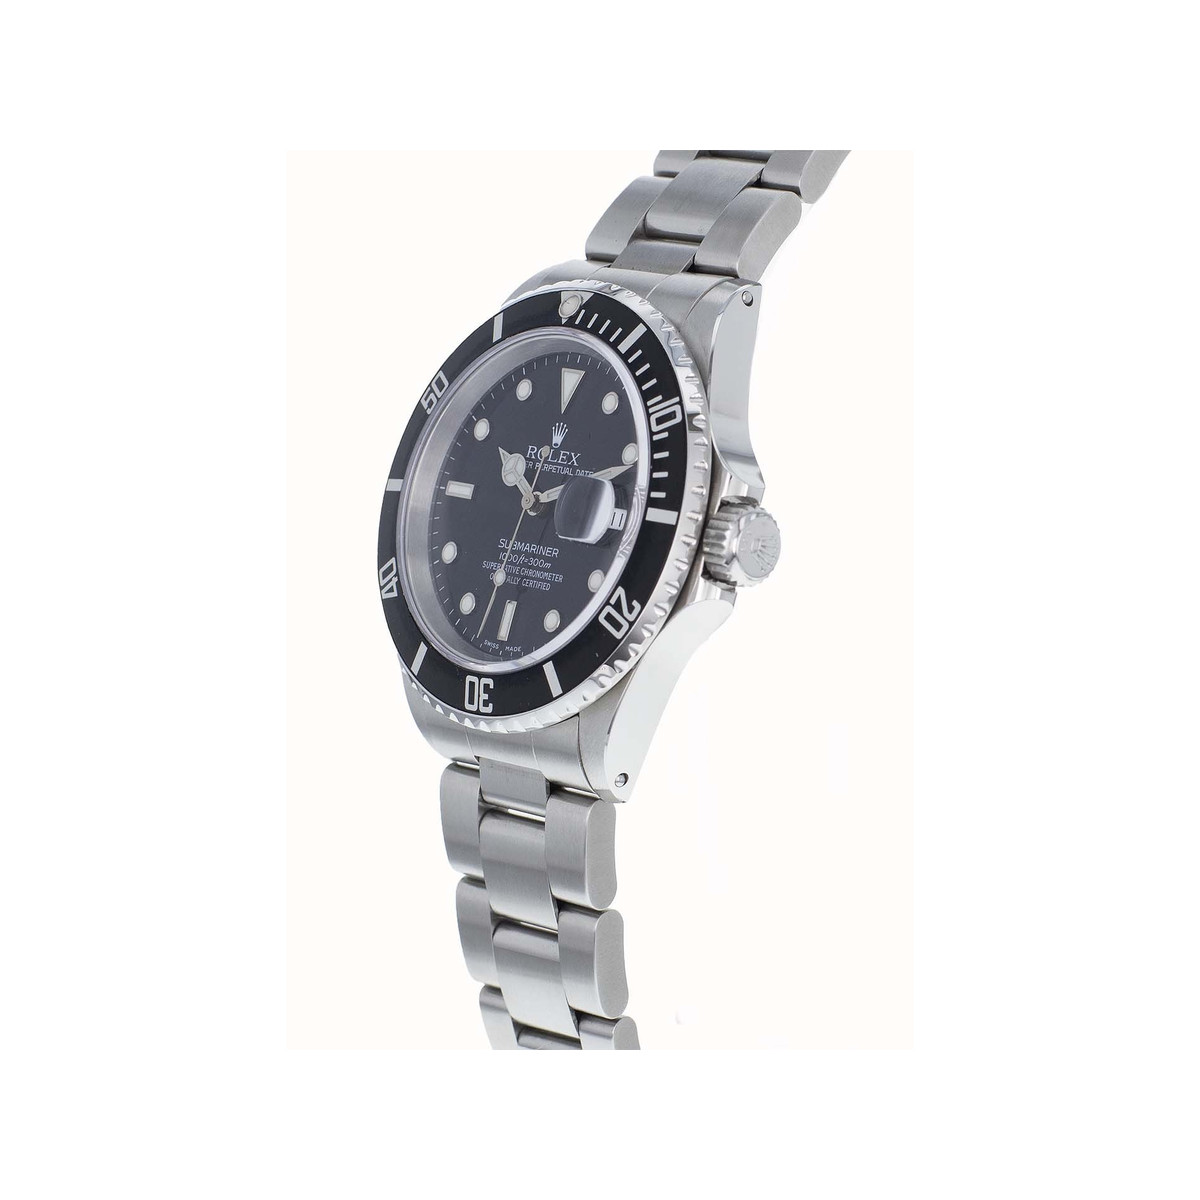 Montre Rolex Submariner Date homme automatique acier - vue 2